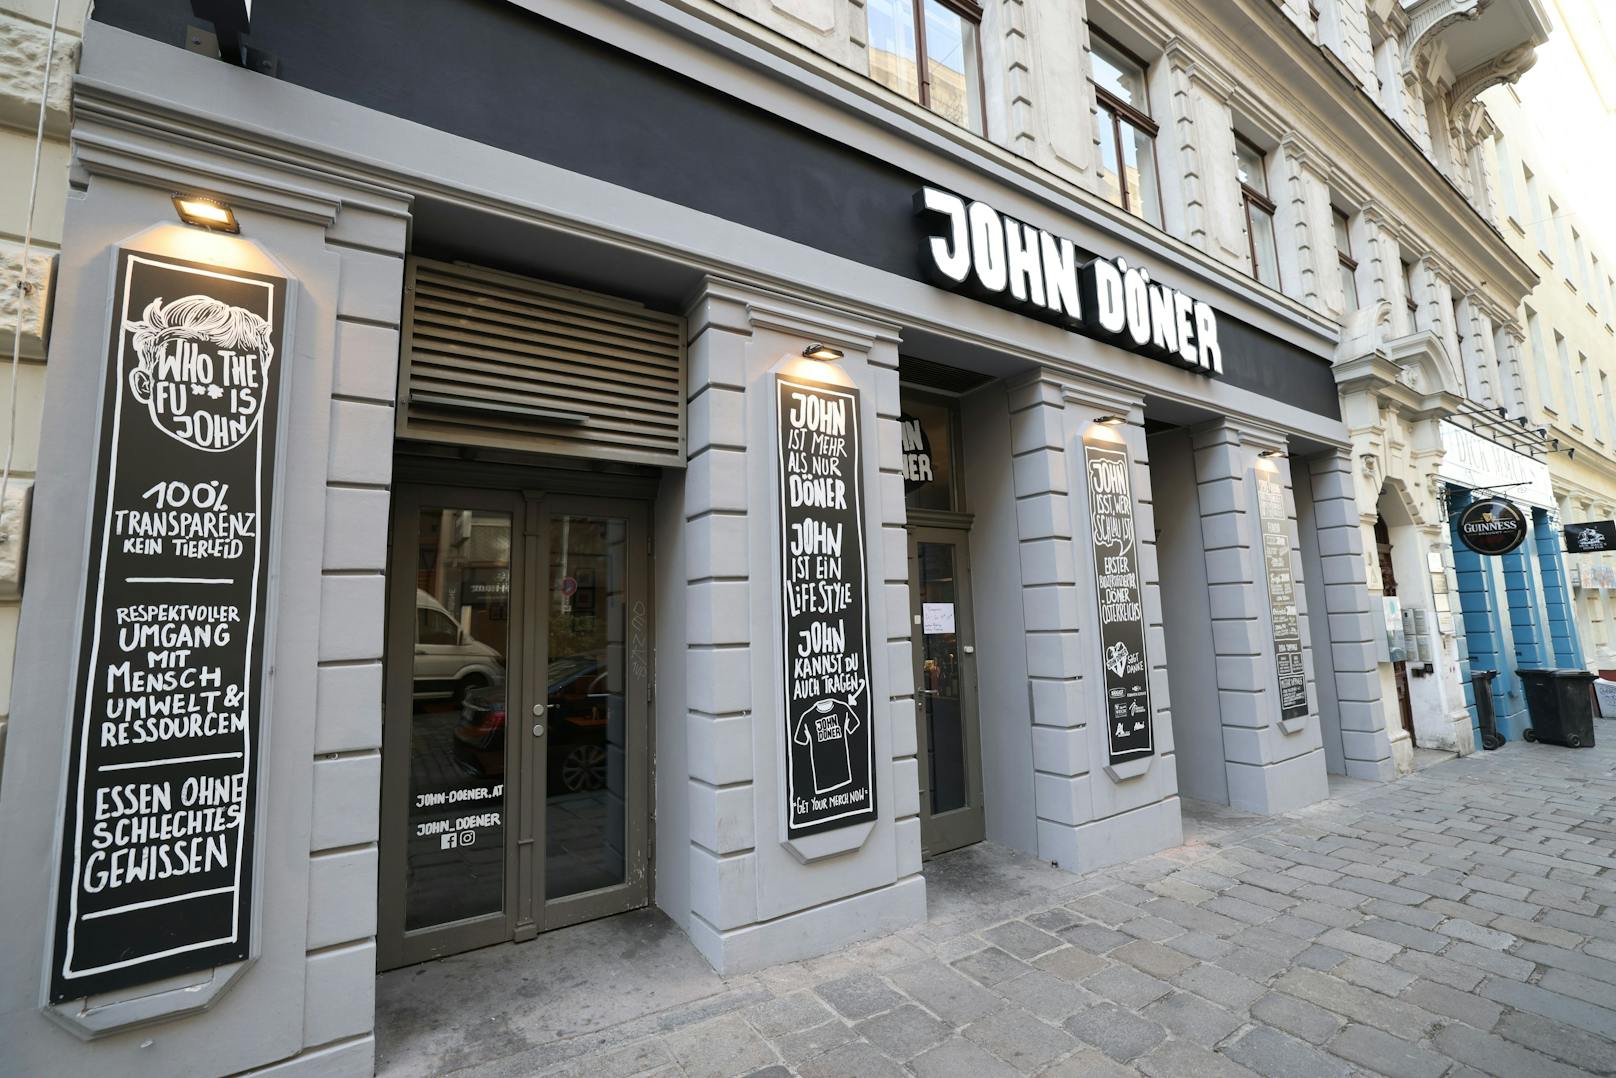 Mit dem nachhaltigen Konzept ist "John Döner" in der Wiener City erfolgreich.